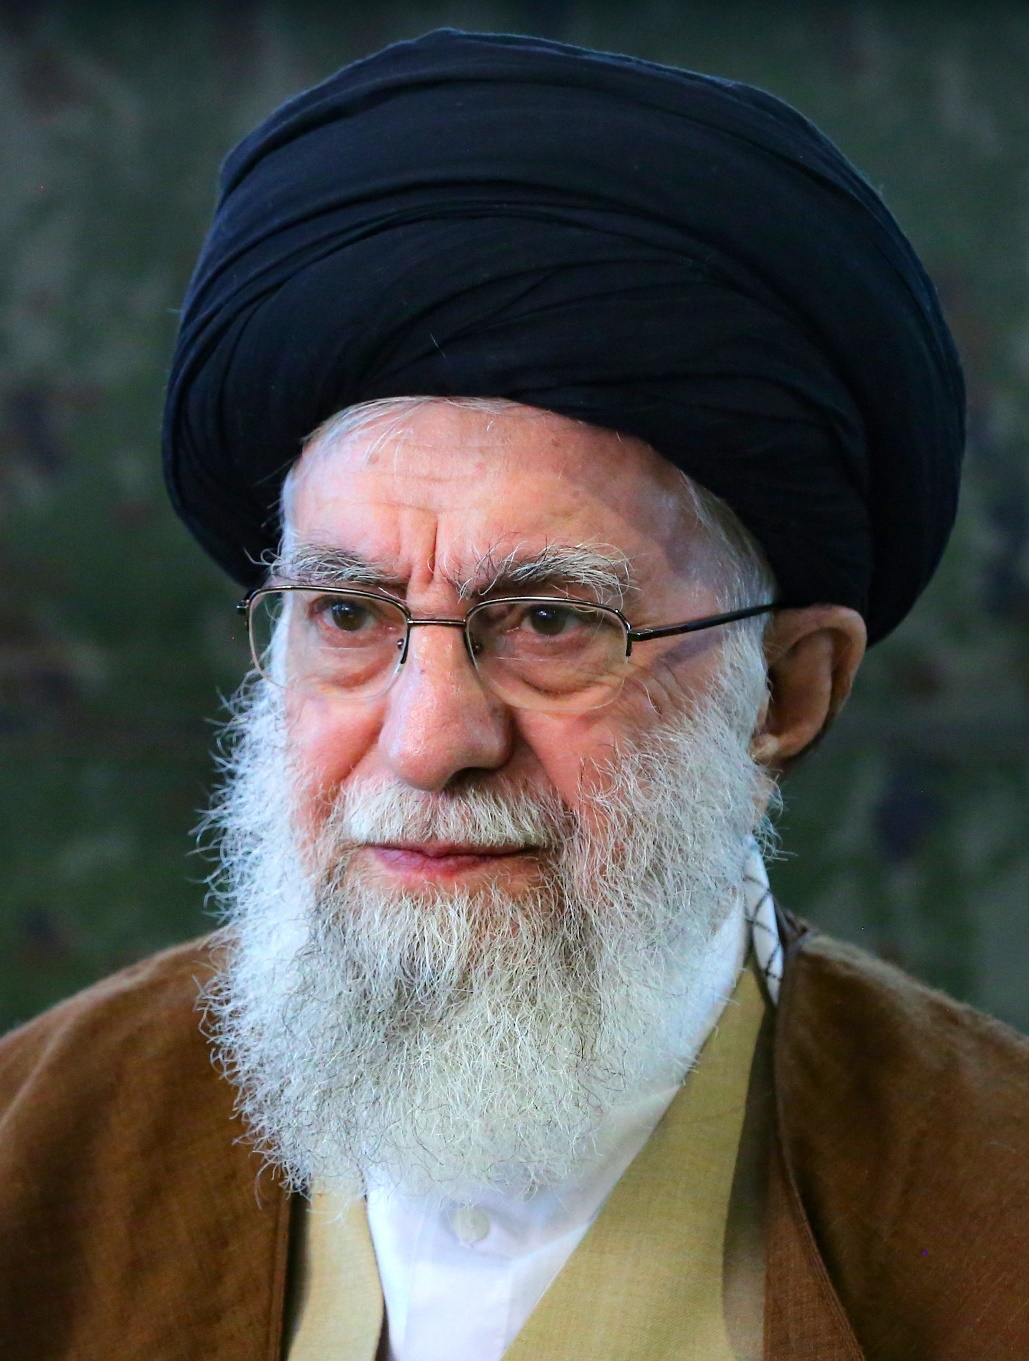 auteur Ali Khamenei de la citation Aujourd'hui, l'Amérique constitue une menace pour la paix et la sécurité dans le monde. Par conséquent, le slogan "Death to America" n'est plus utilisé uniquement par notre peuple. Aujourd'hui, vous voyez des gens du monde entier mettre le feu à l'effigie du président américain et chanter le slogan «Death to America». Cela est dû aux demandes exagérées du régime américain, à son arrogance, à sa vanité et à son désir de contrôler, et parce que c'est un pion entre les mains des sionistes.